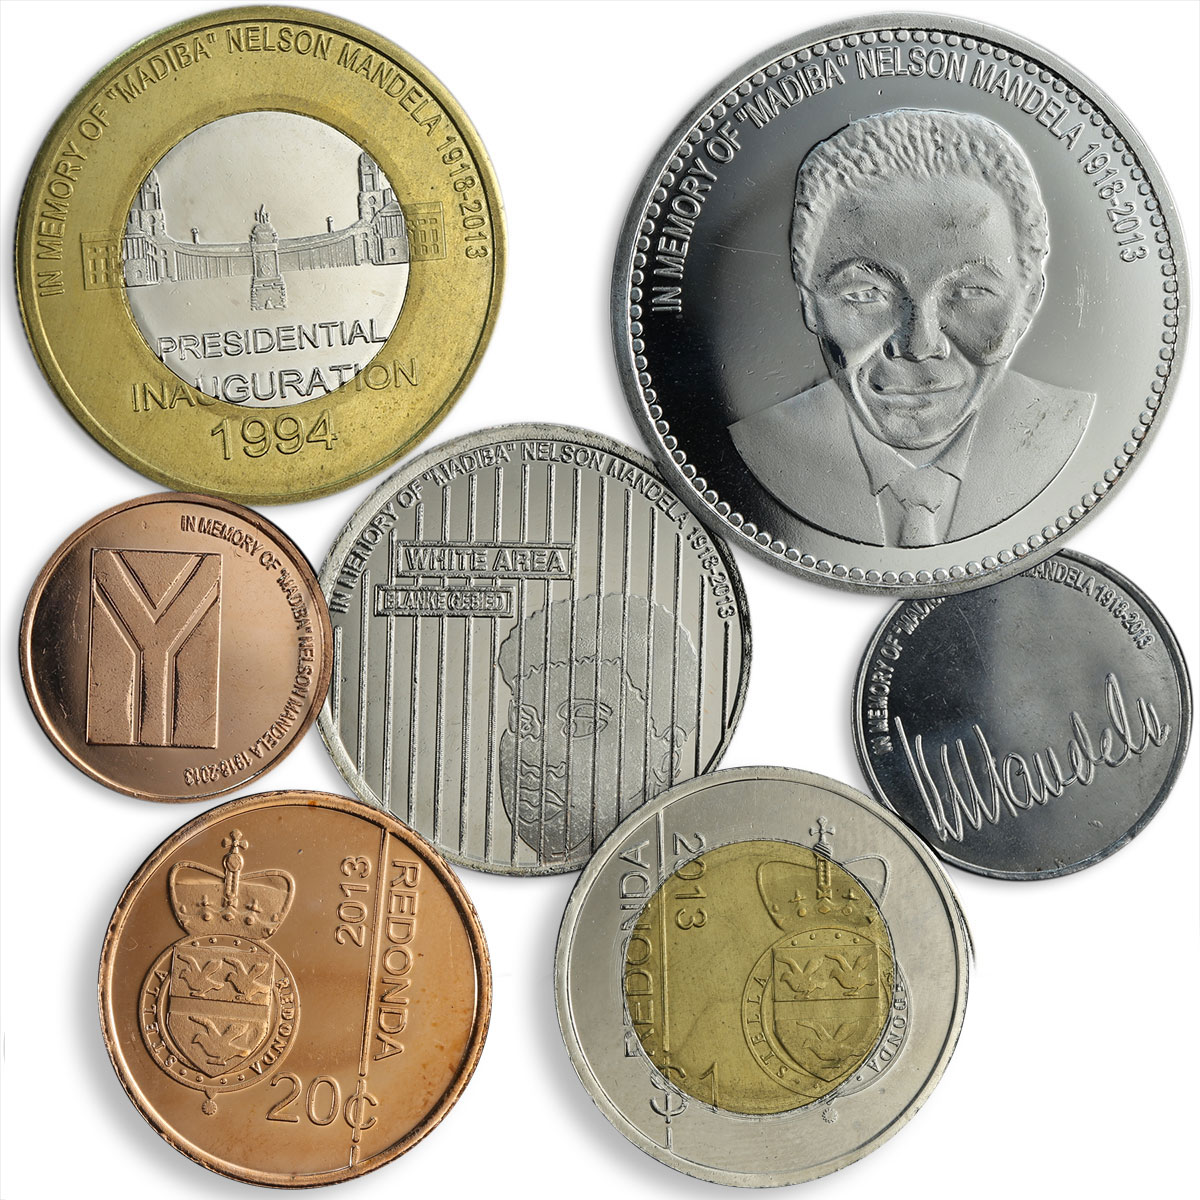 Redonda set of 7 coins Nelson Mandela 1918 - 2013 President of South Africa 2013